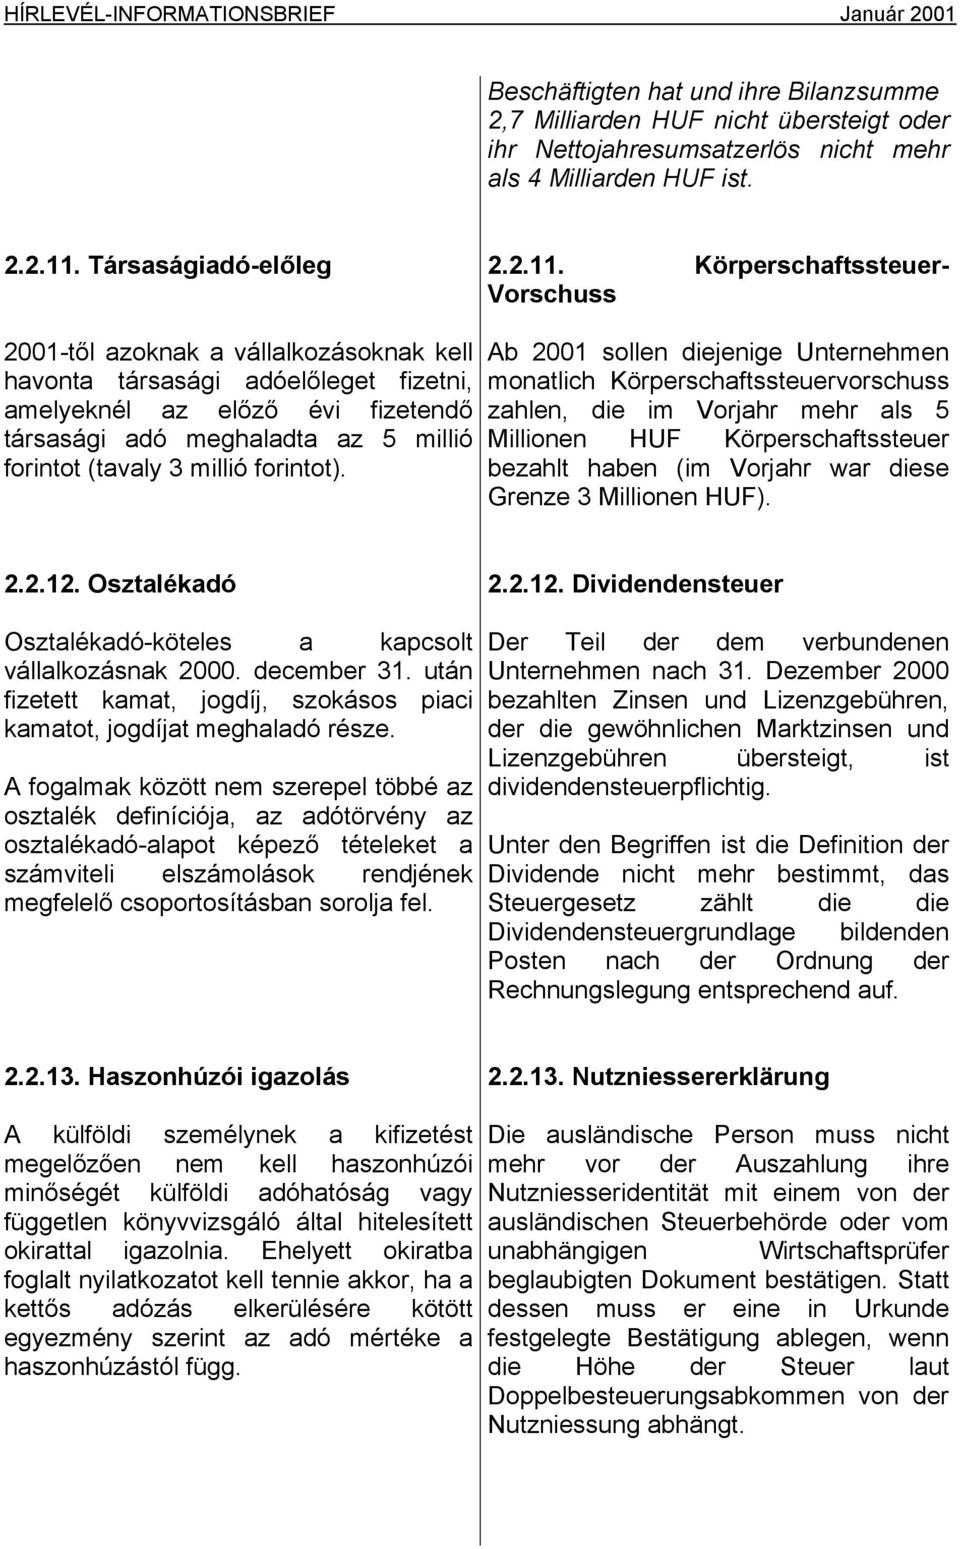 Körperschaftssteuer- Vorschuss 2001-től azoknak a vállalkozásoknak kell havonta társasági adóelőleget fizetni, amelyeknél az előző évi fizetendő társasági adó meghaladta az 5 millió forintot (tavaly